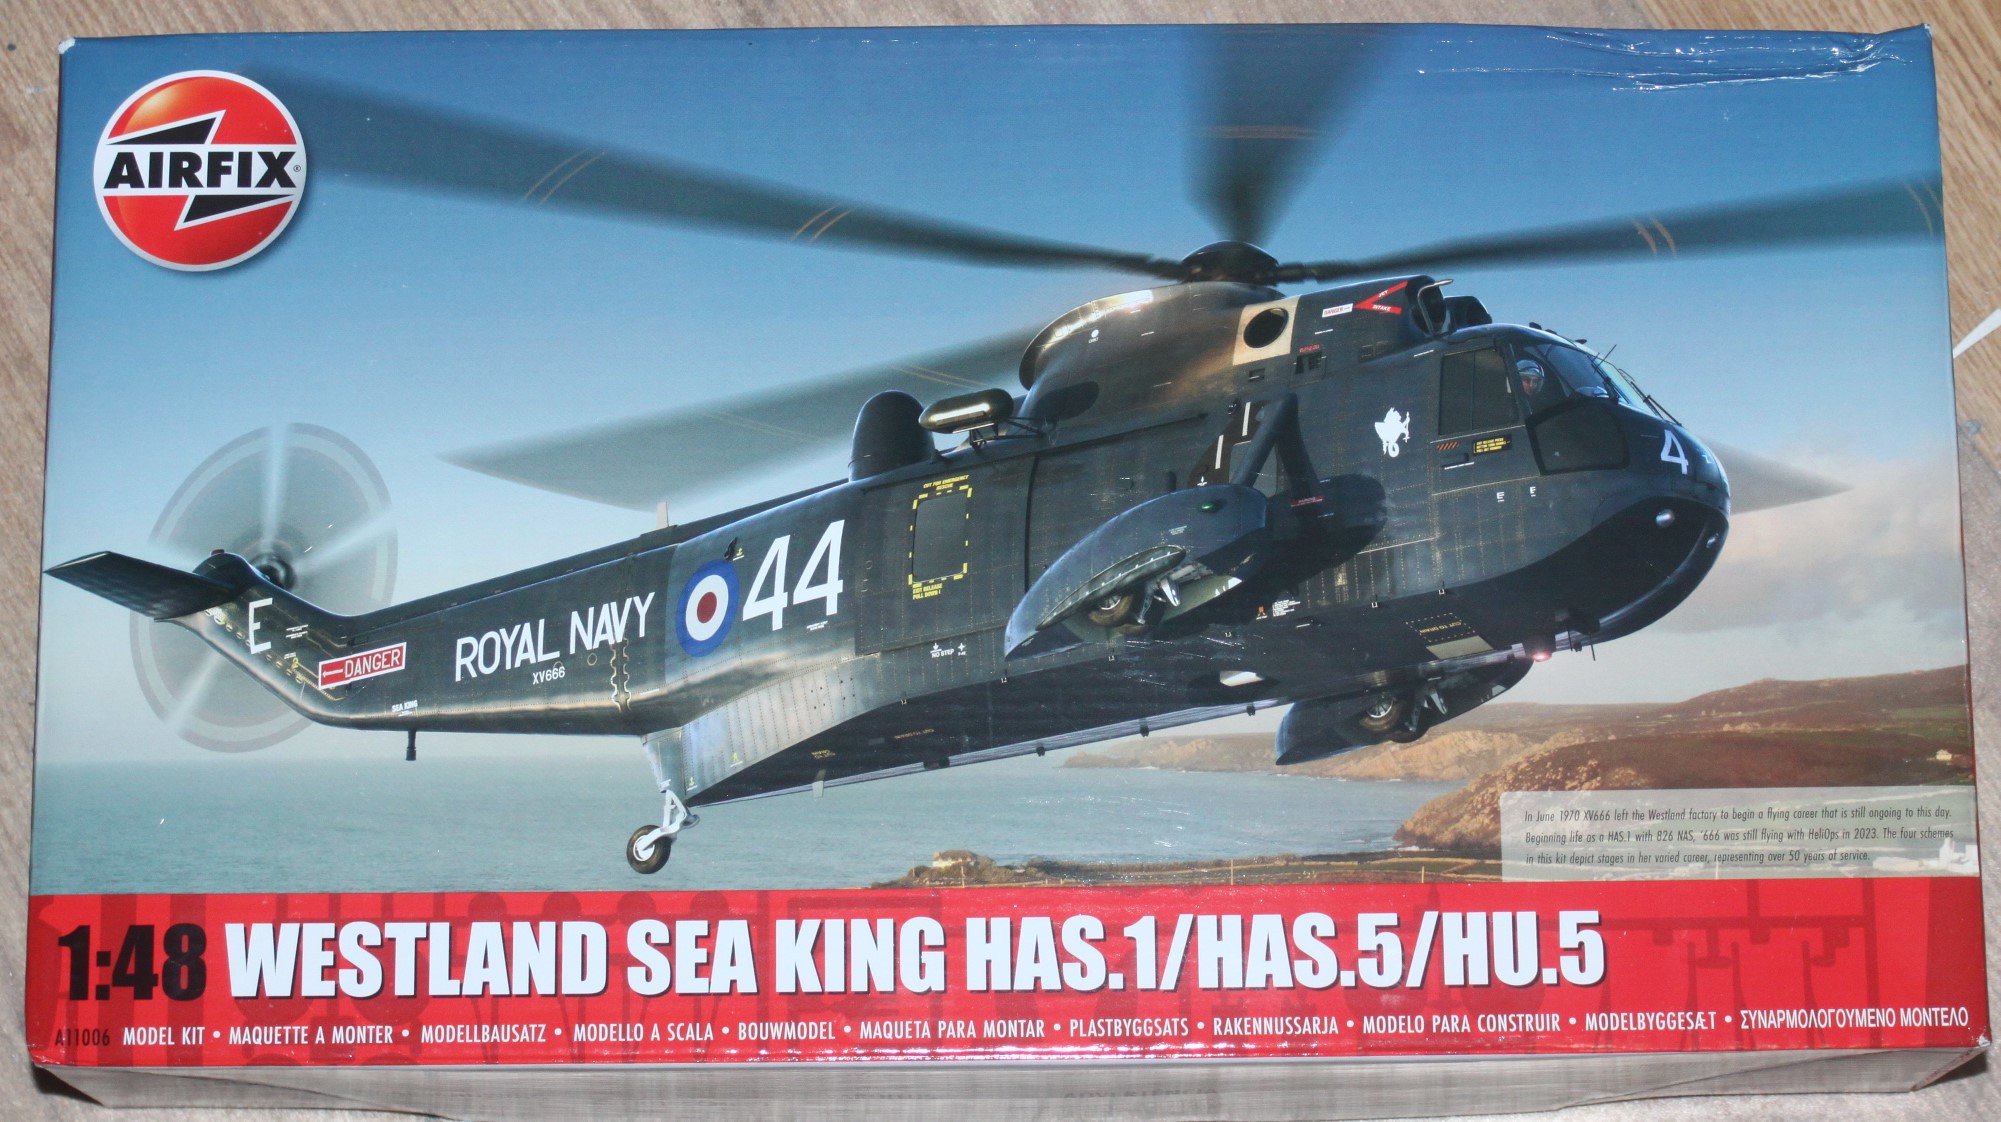 Westland Sea King HAS.1, Airfix 1/48 53321531127_db2b49800e_k